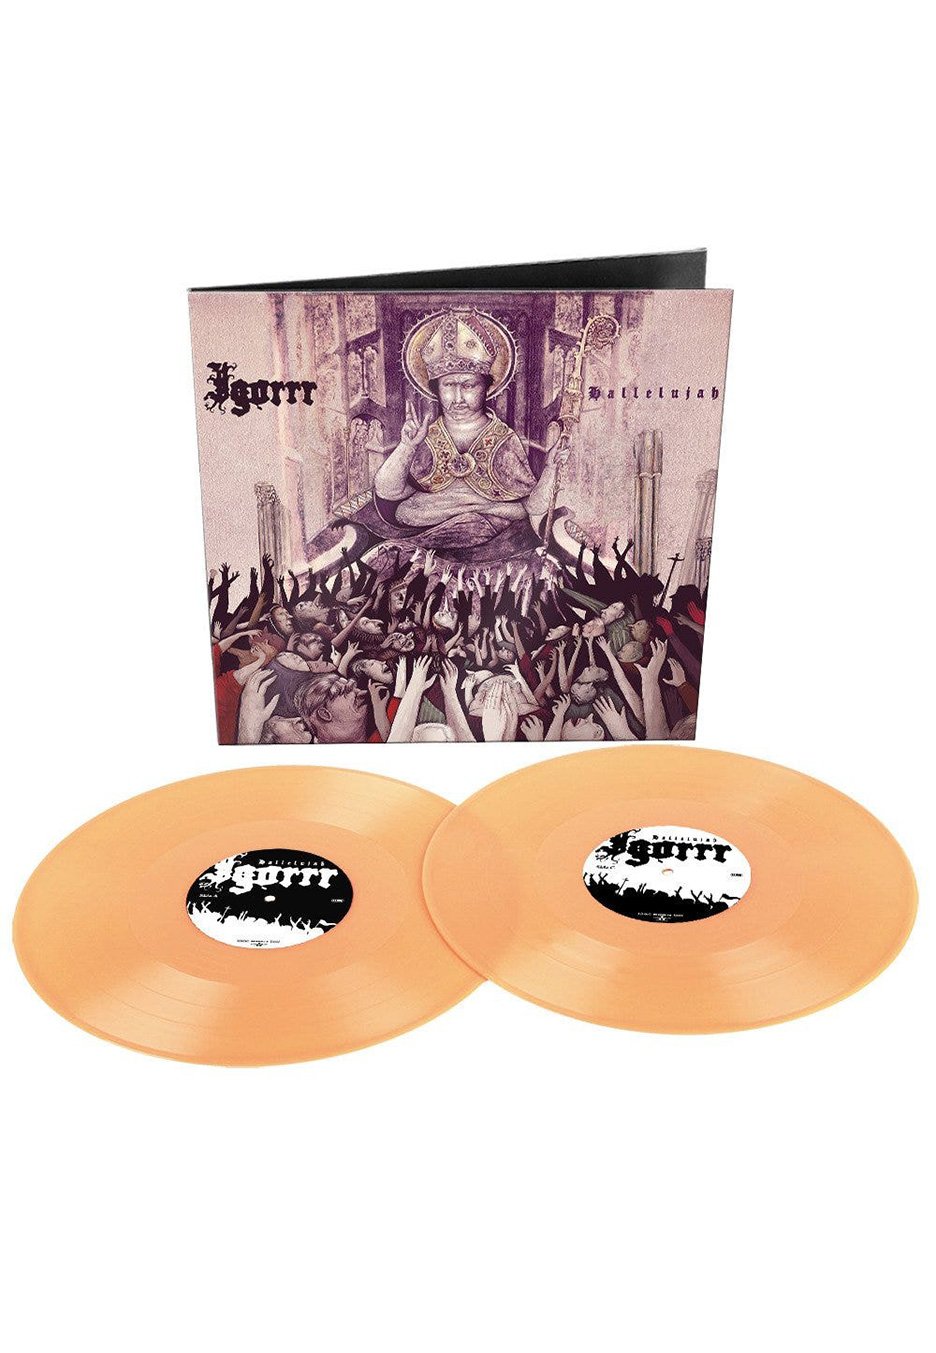 Igorrr - Hallelujah Flesh Pink - Colored 2 Vinyl